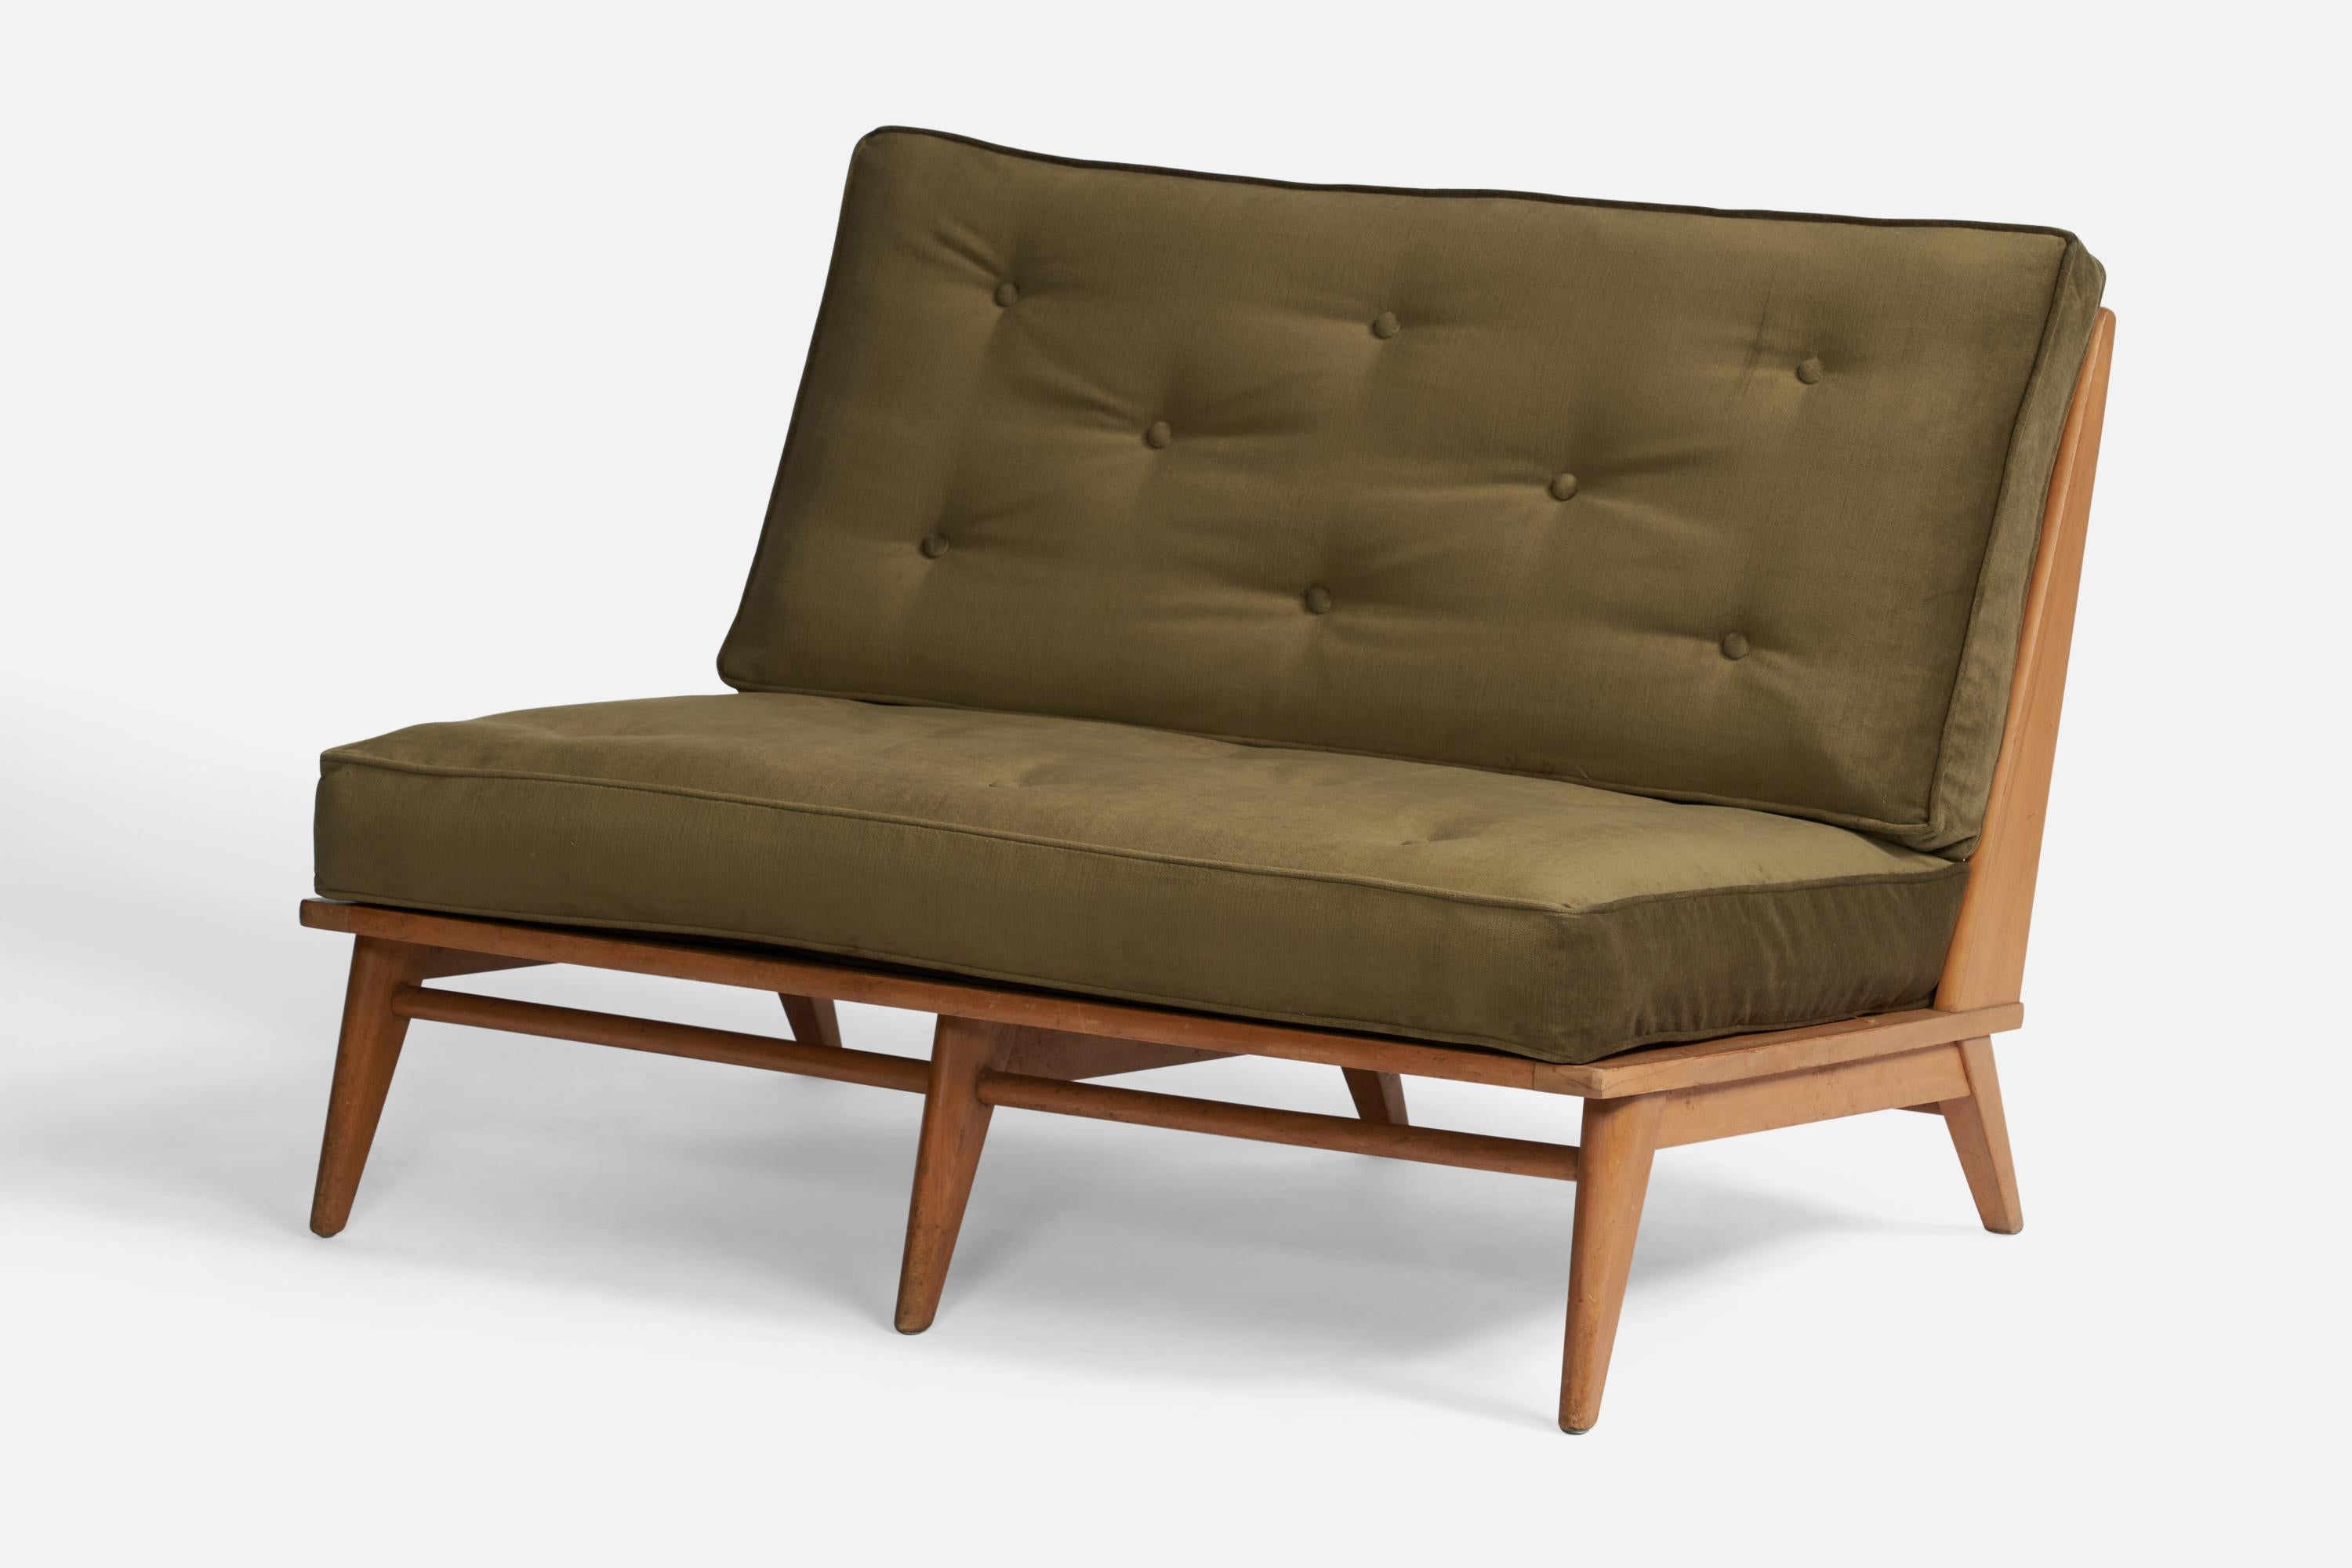 Canapé en érable et tissu de velours vert conçu et produit par Heywood Wakefield, États-Unis, années 1950.

Hauteur de l'assise 16